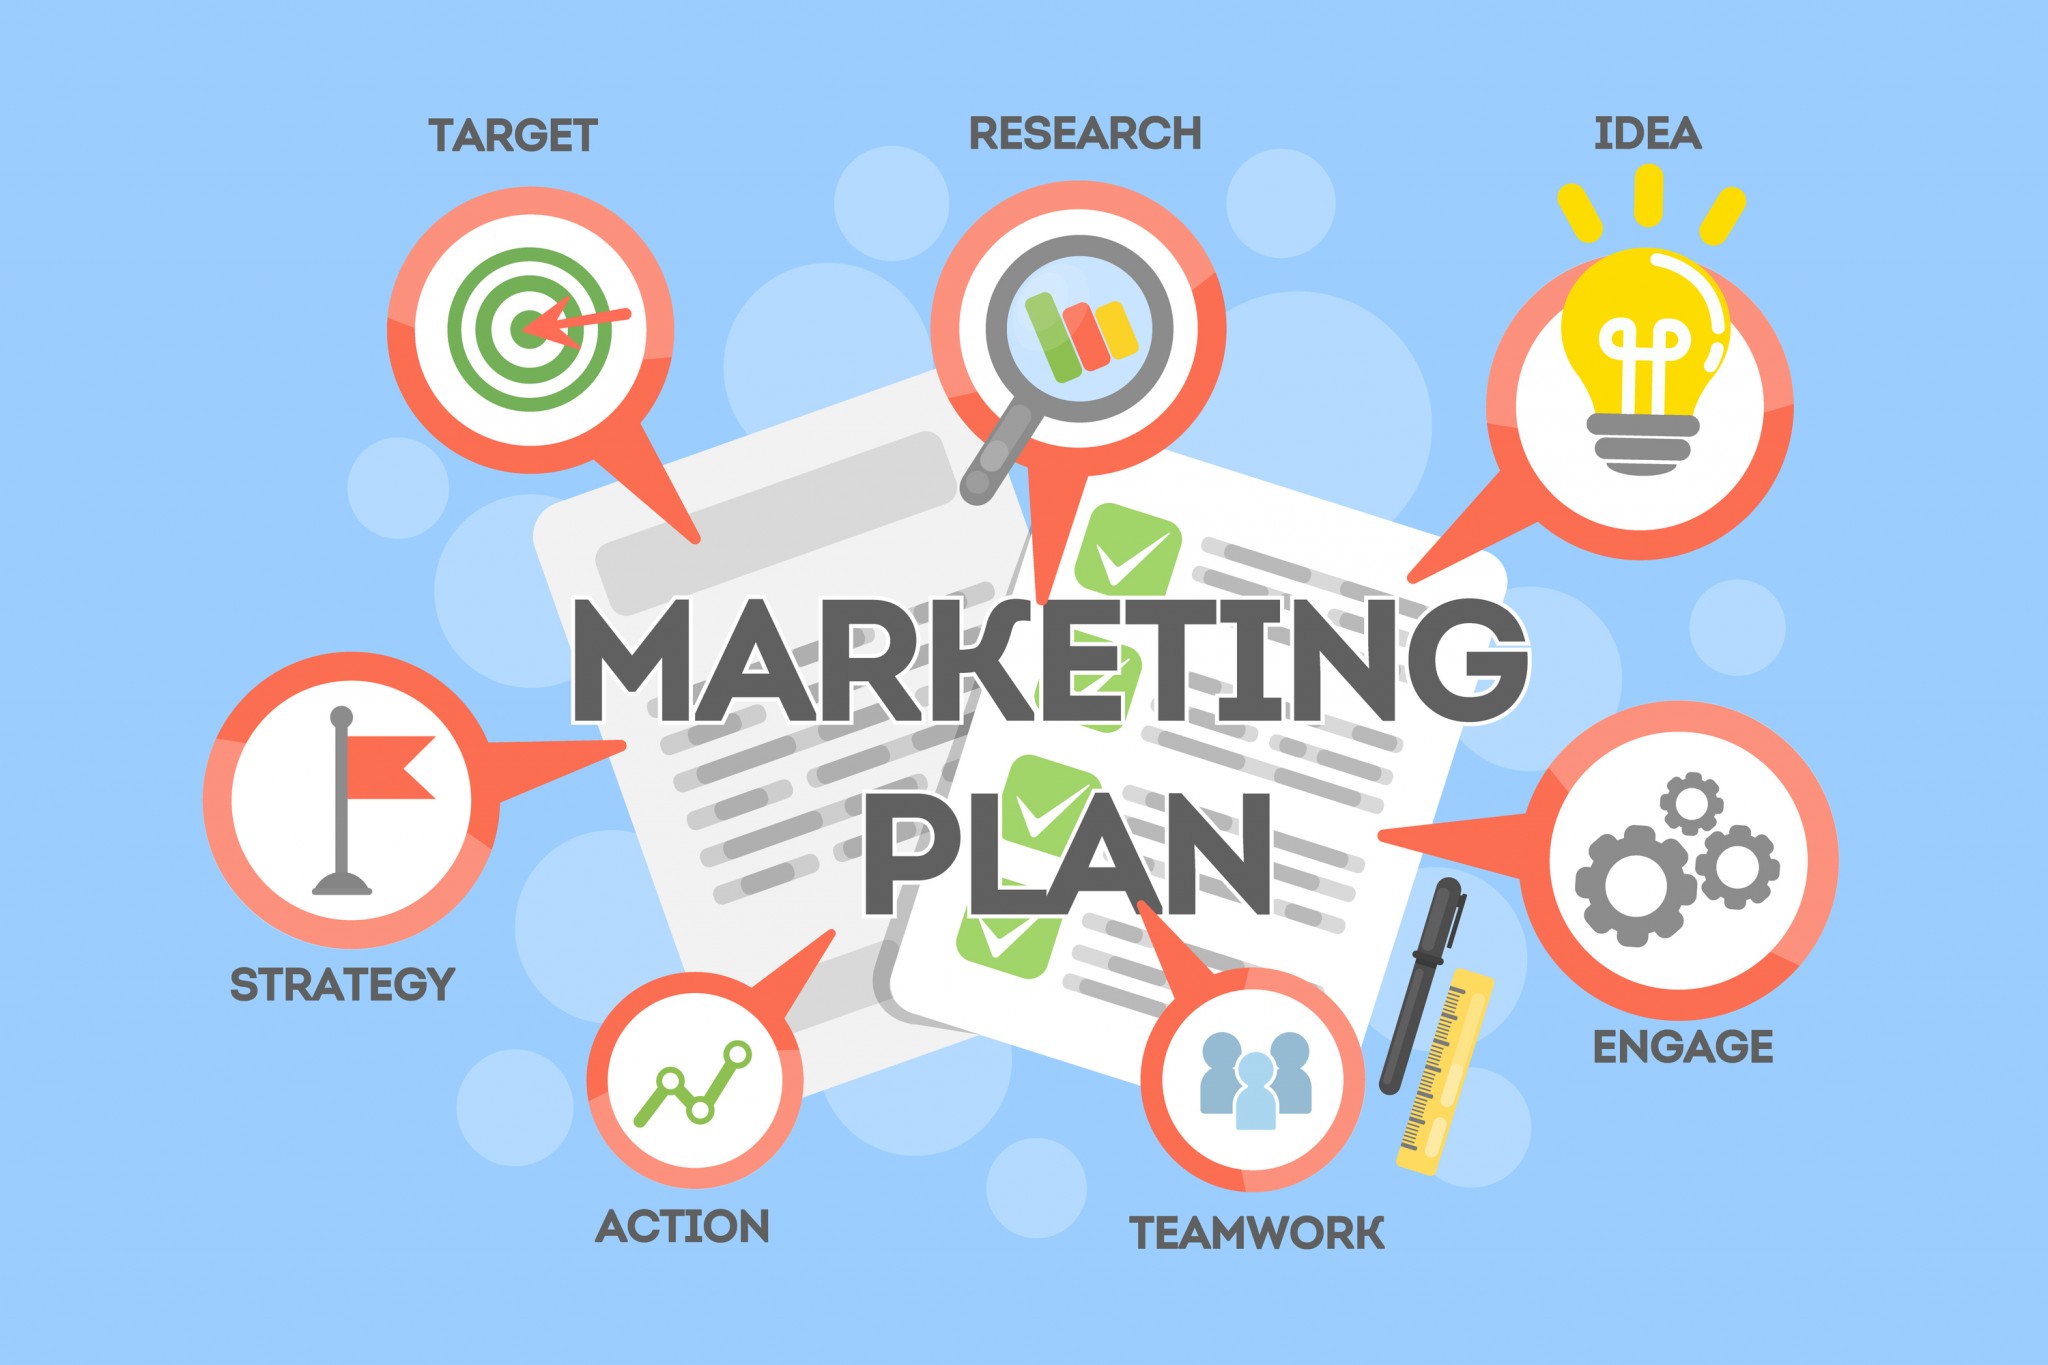 Vì sao kế hoạch marketing tổng thể cần được doanh nghiệp ưu tiên số 1?